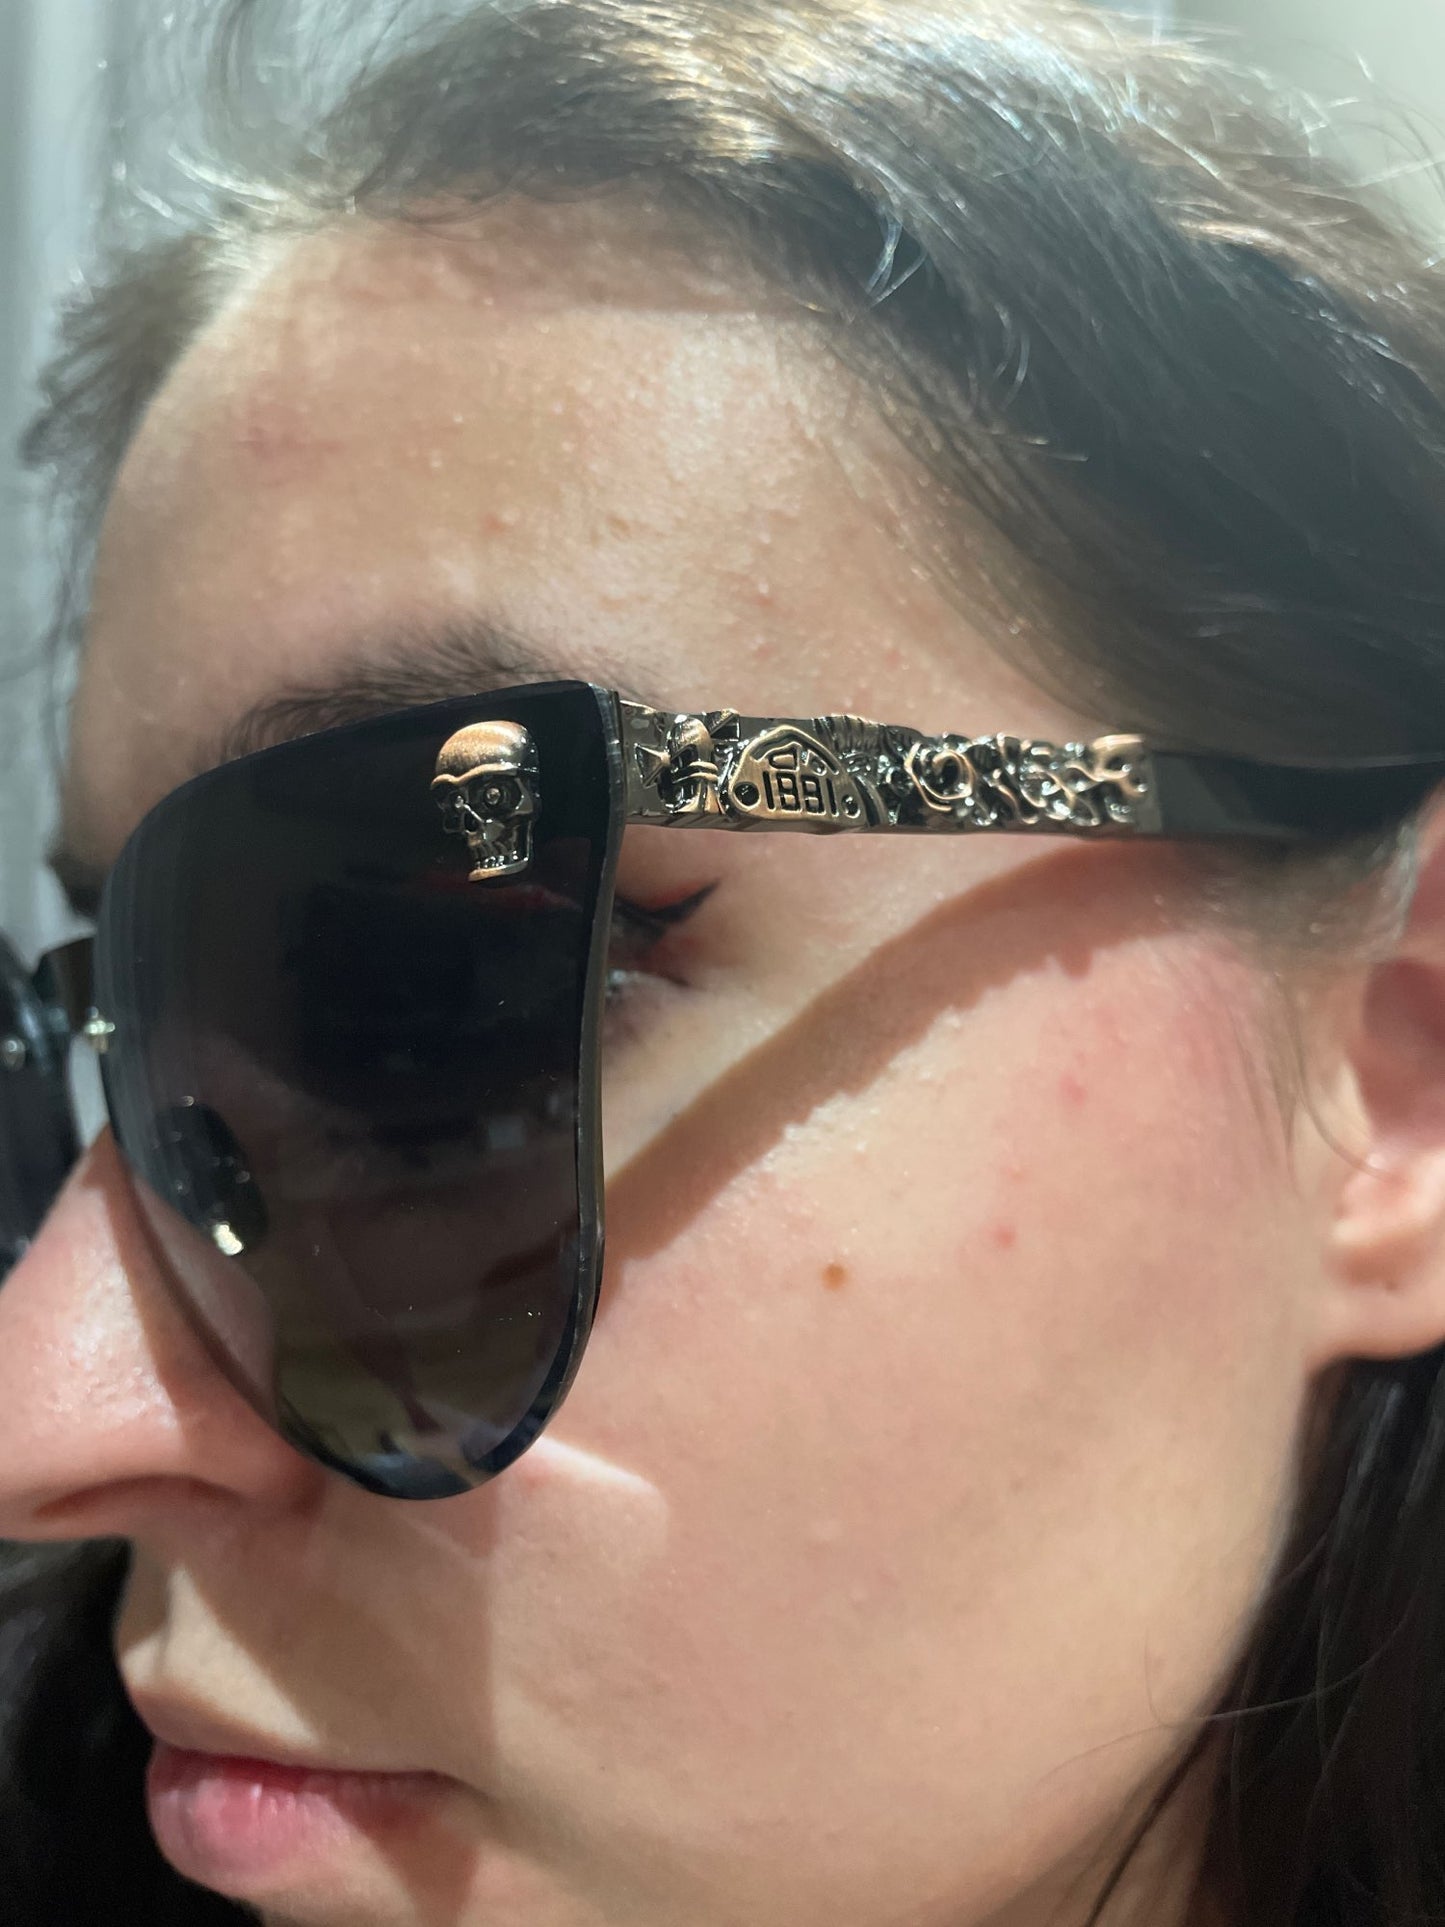 Skull Oversize Cat Eye Sunglasses